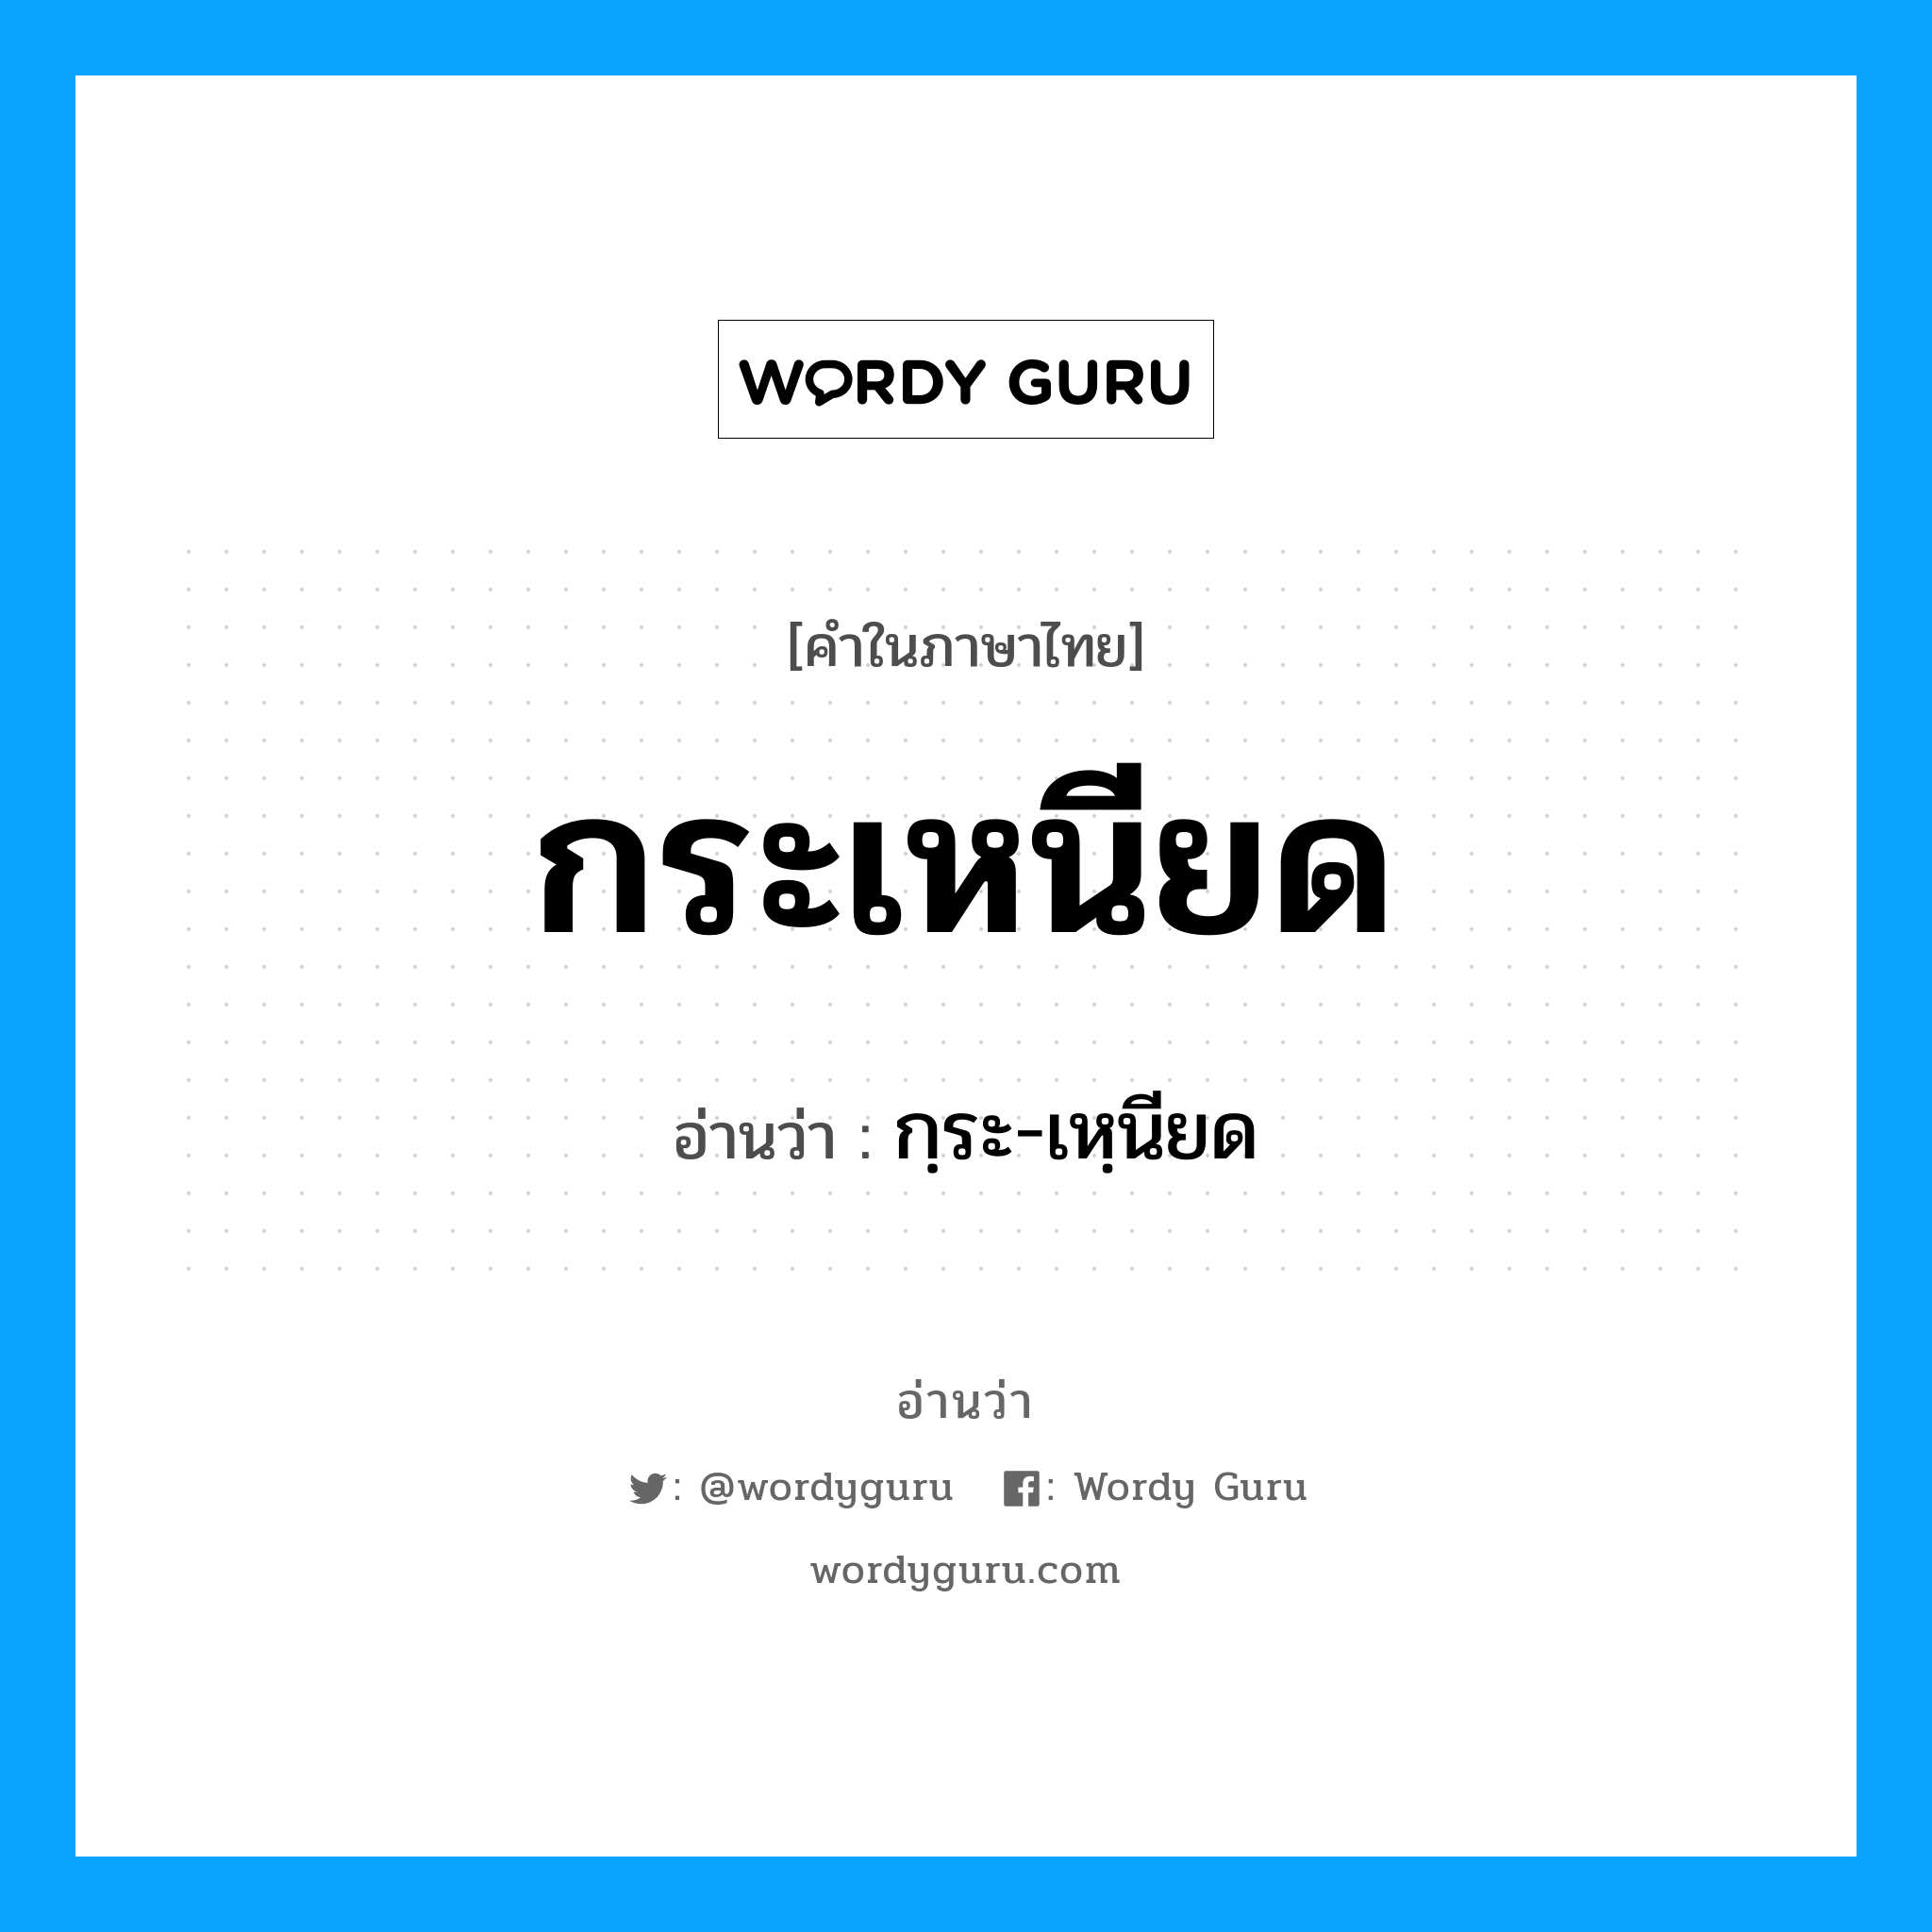 กฺระ-เหฺนียด เป็นคำอ่านของคำไหน?, คำในภาษาไทย กฺระ-เหฺนียด อ่านว่า กระเหนียด